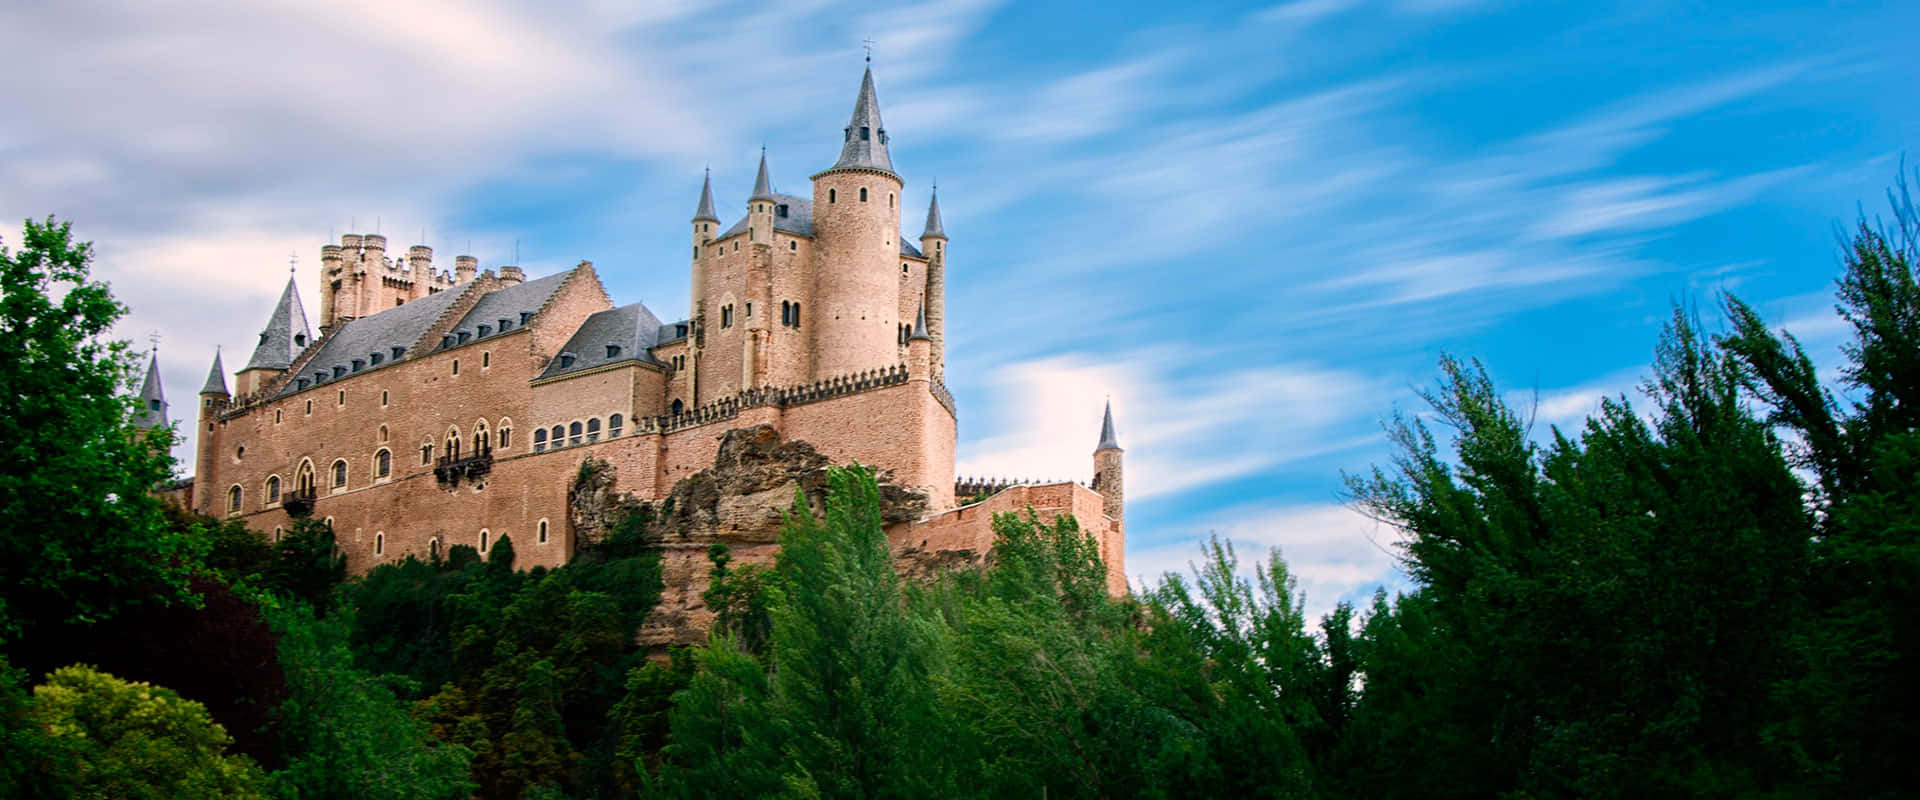 Segovia Castle From Afar Wallpaper